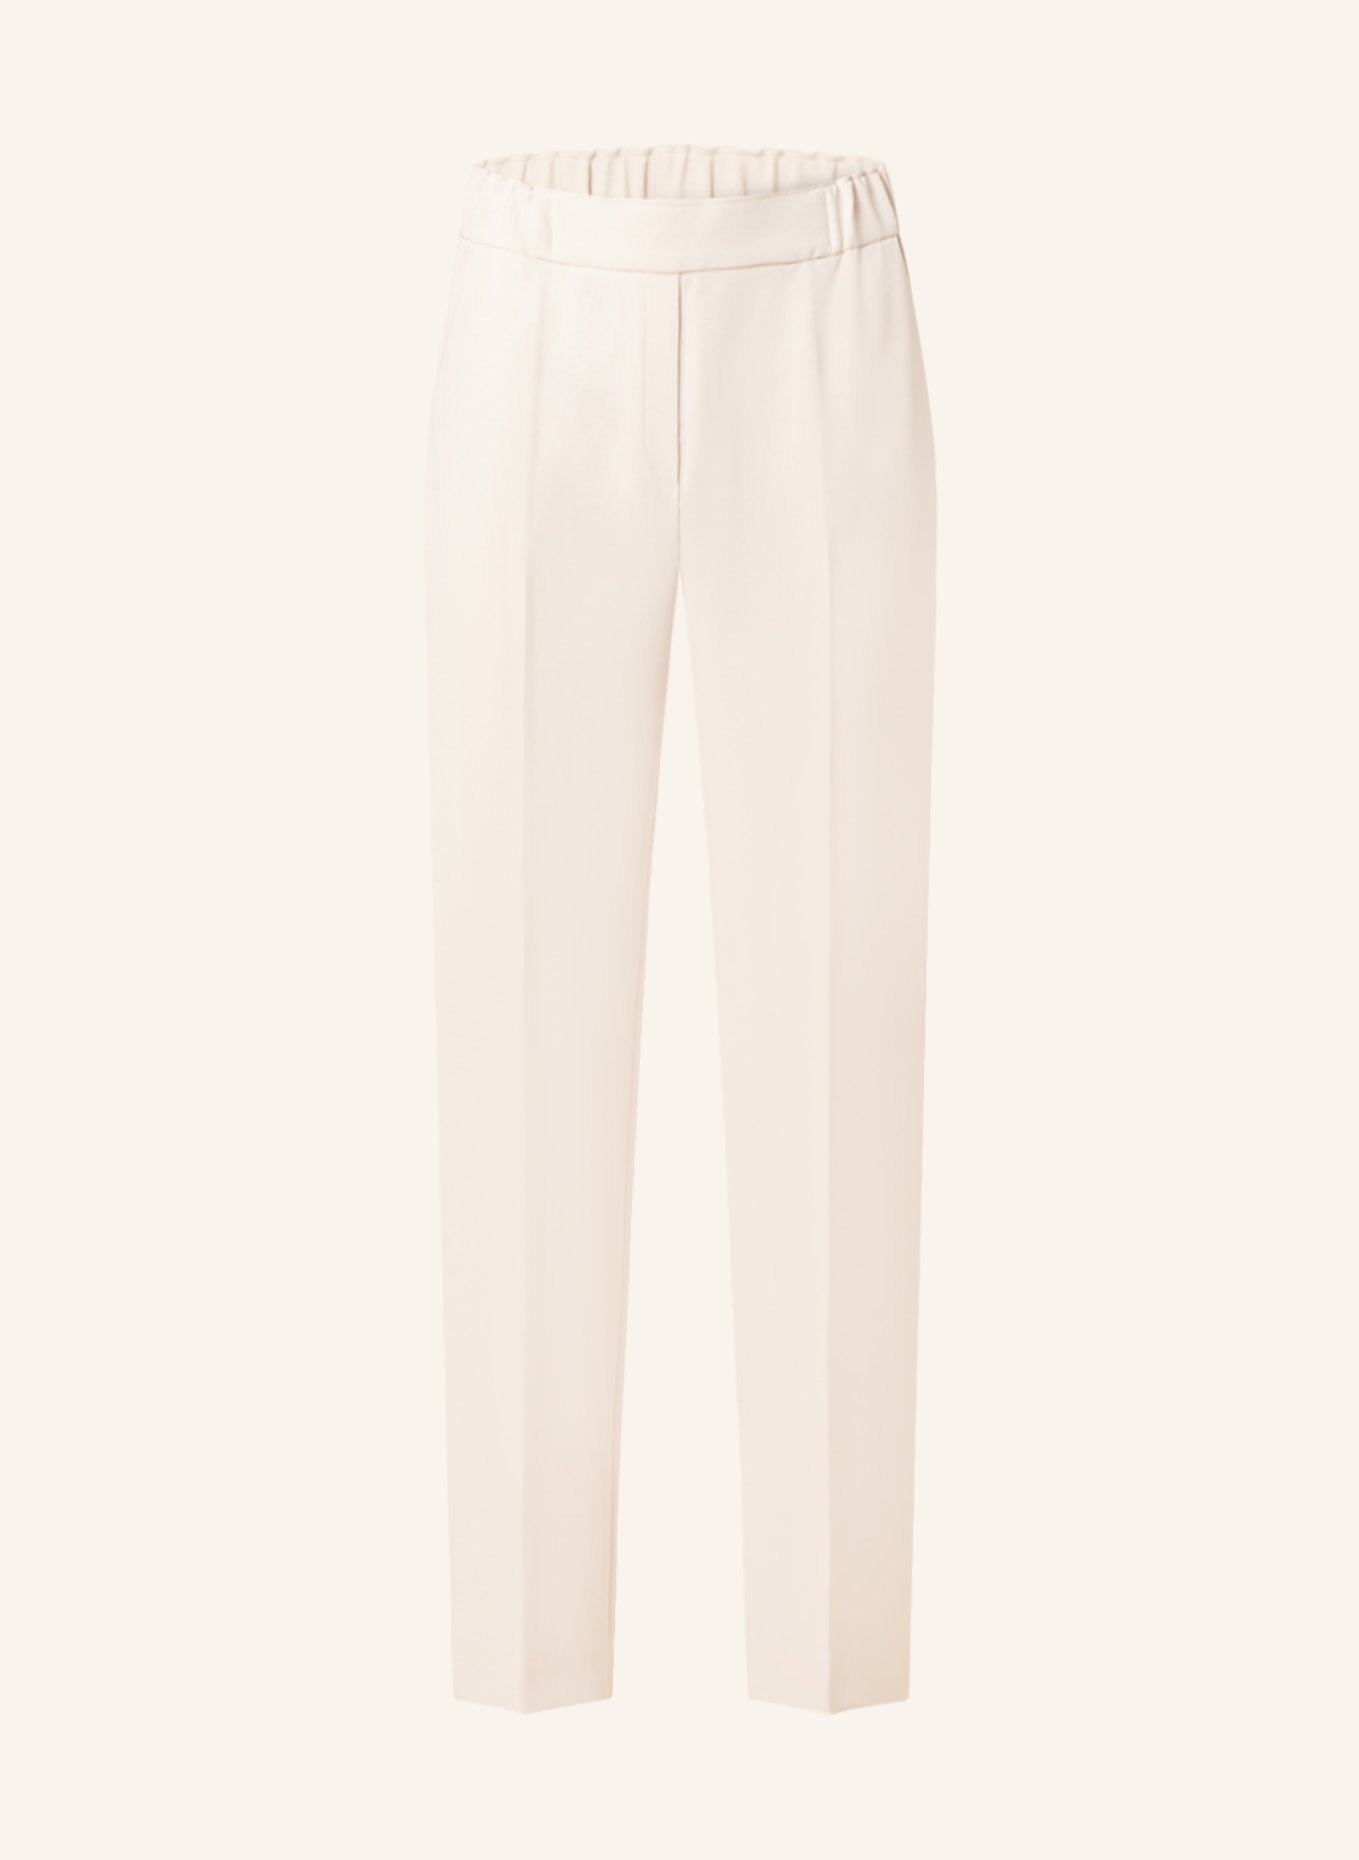 ANTONELLI firenze Trousers SITRO, Color: CREAM (Image 1)